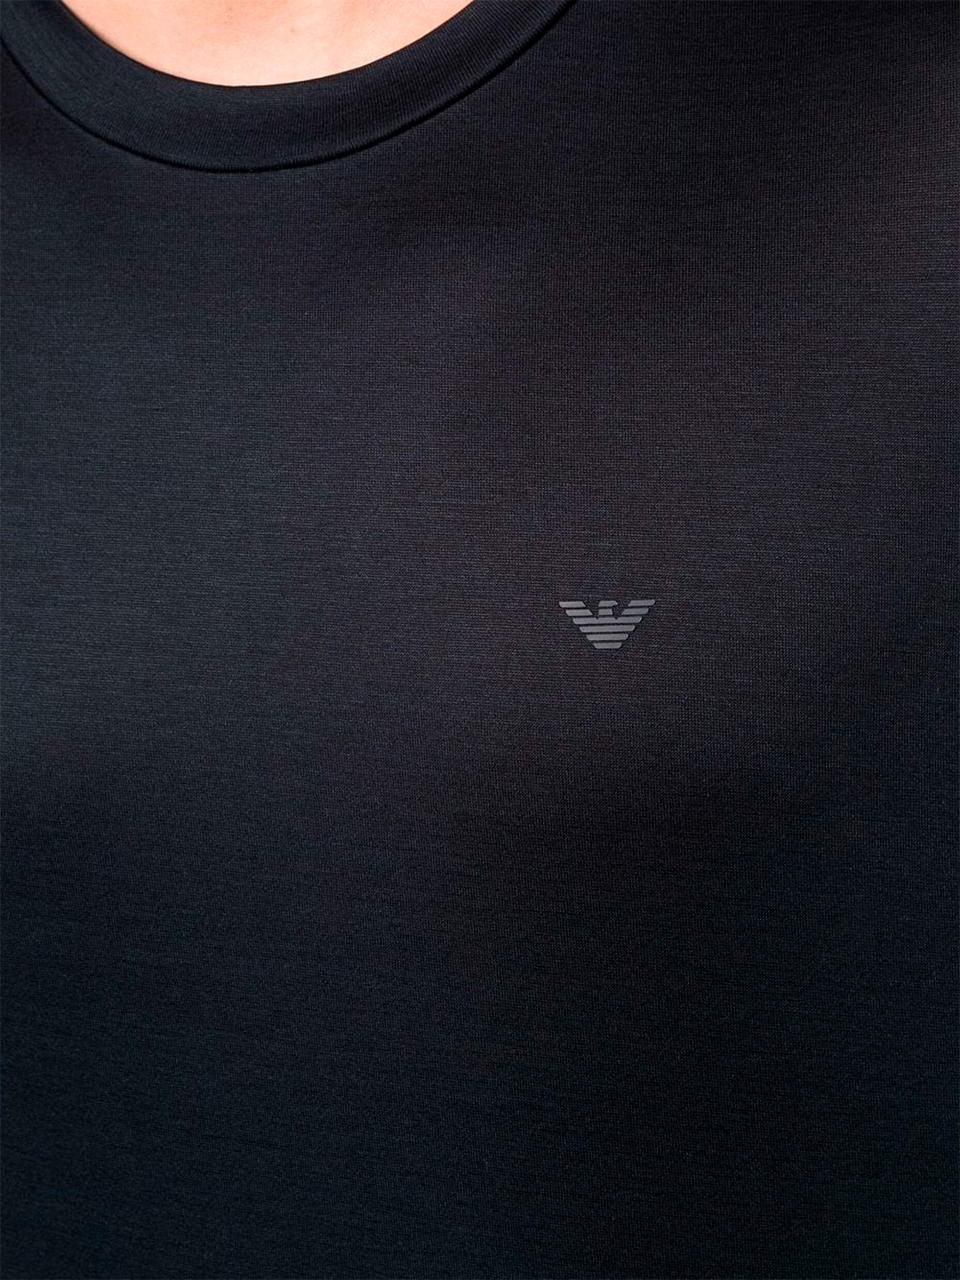 Imagem de: Camiseta Emporio Armani Preta com Emblema